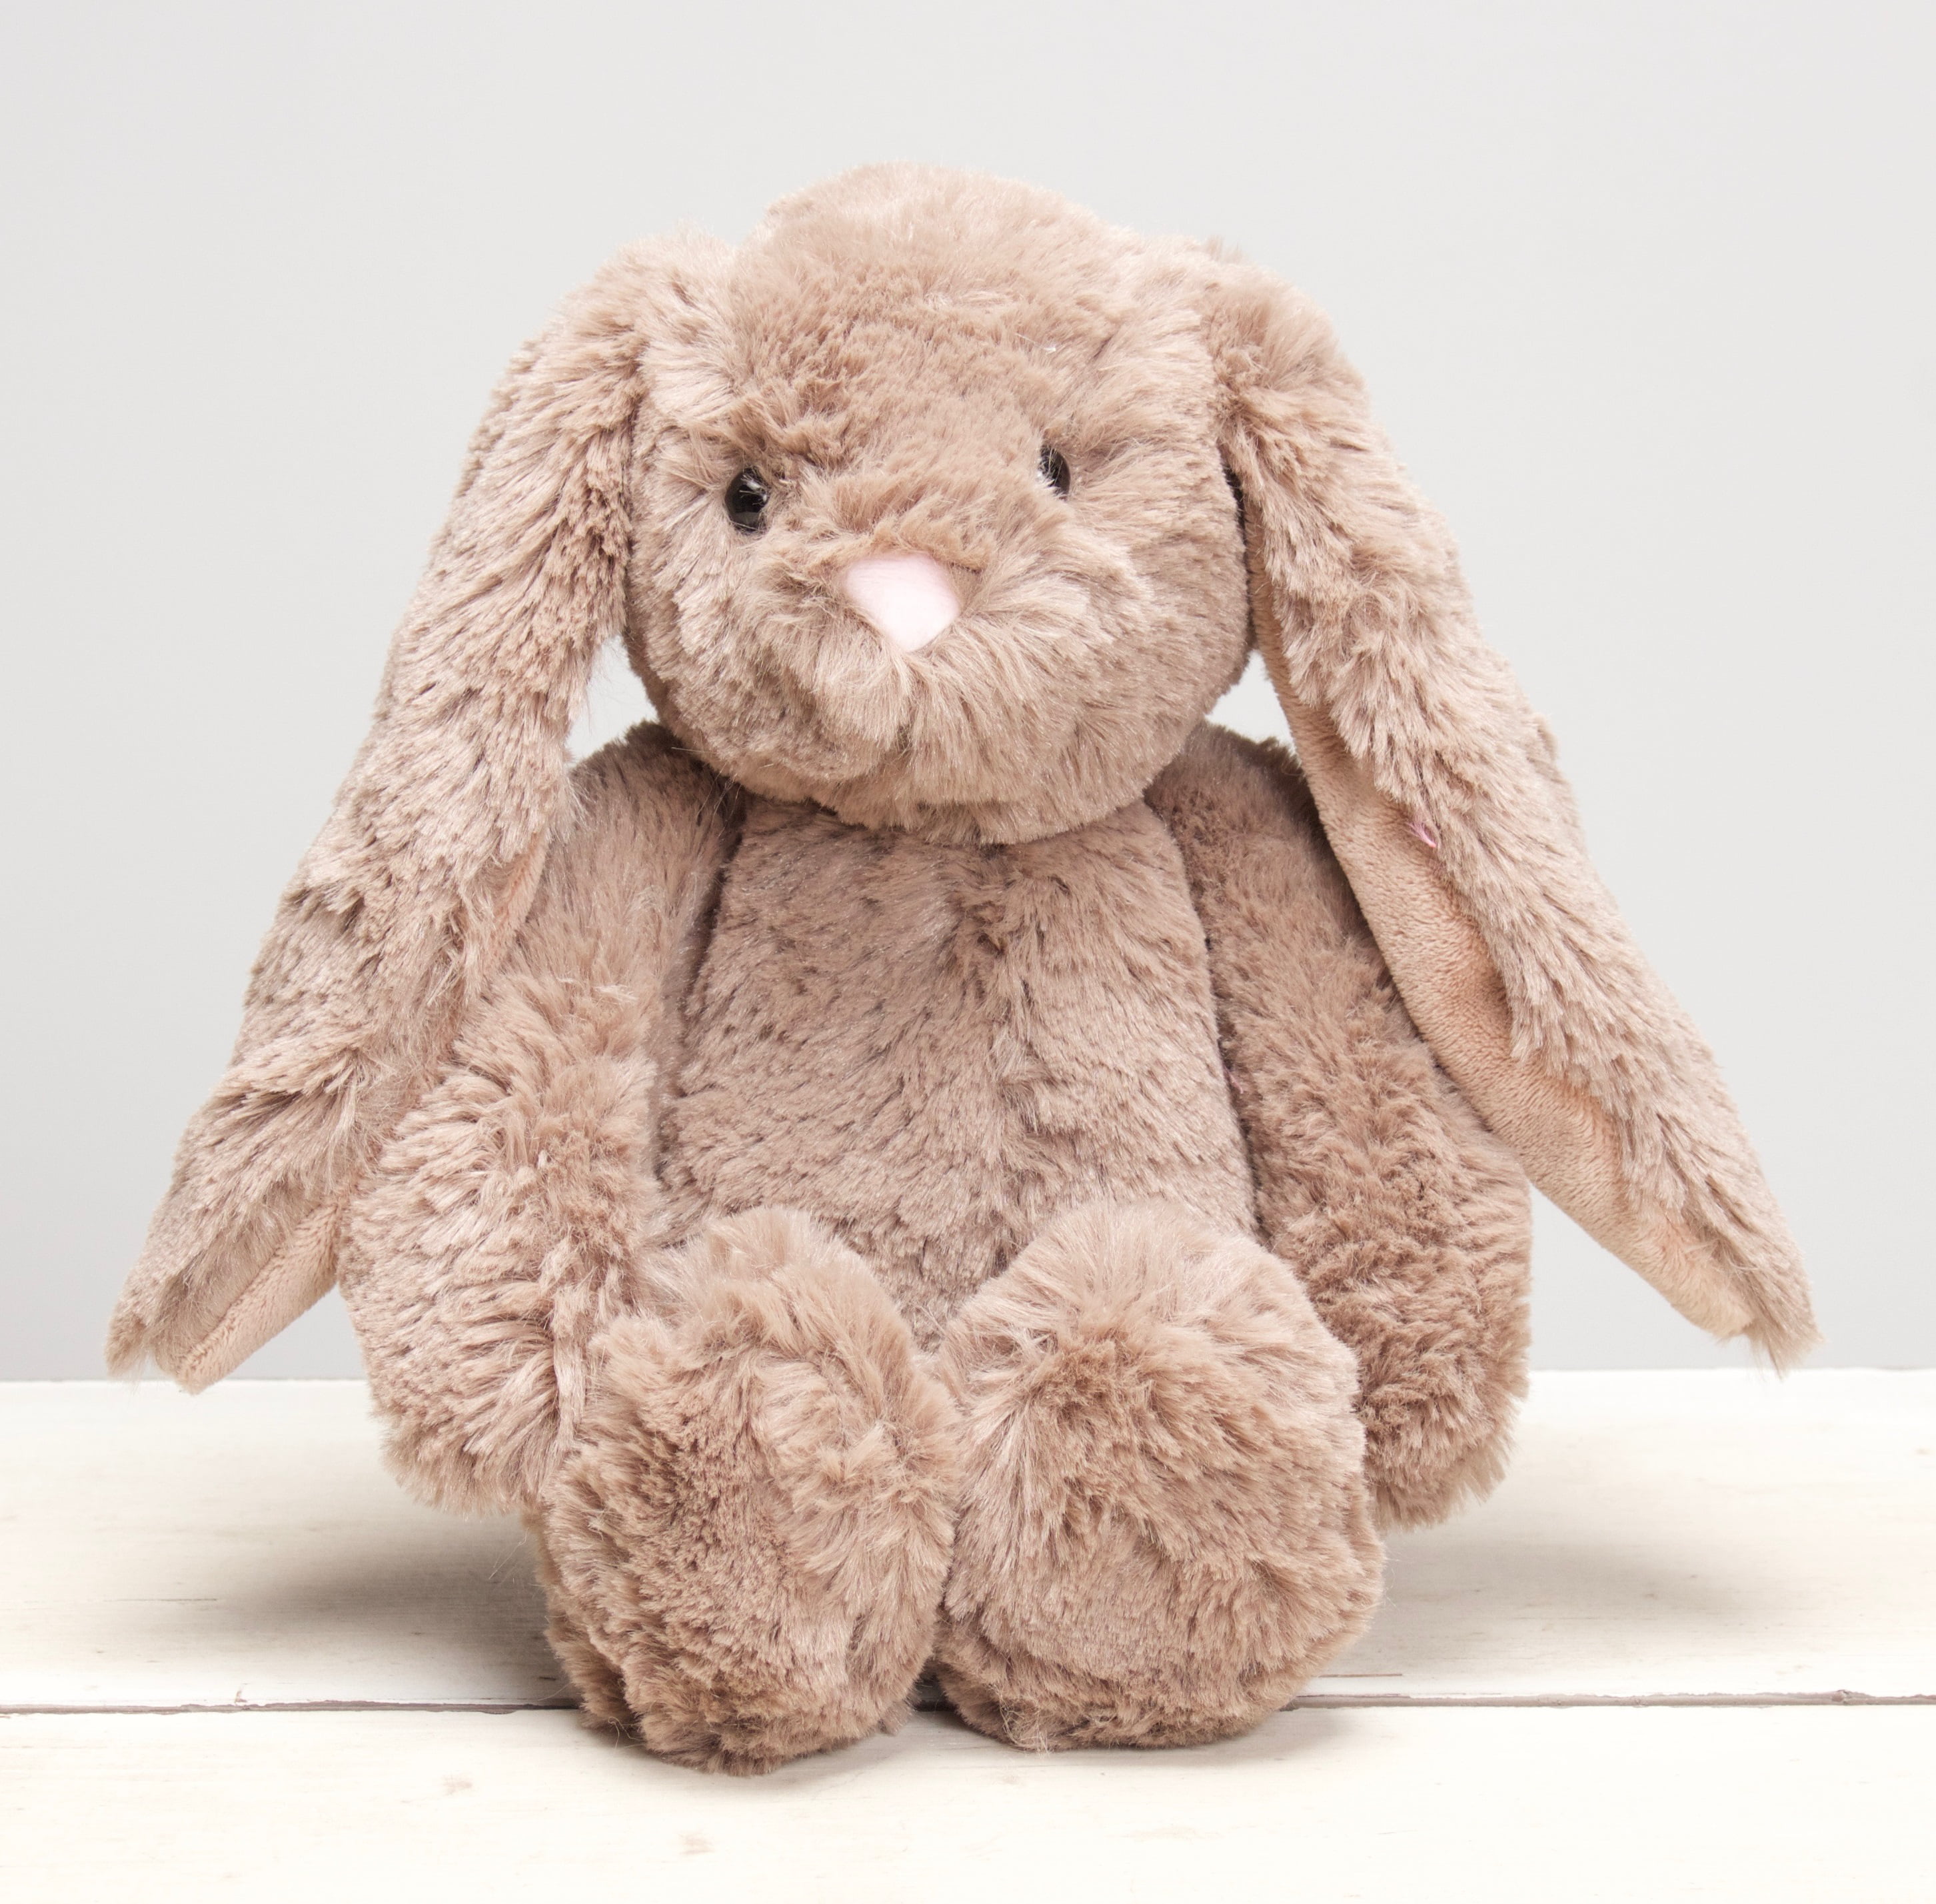 Details about   HugFun Sitting Floppy Ear Bunny Plush 16" Brown W Tag Stuffed Animal Soft EASTAR